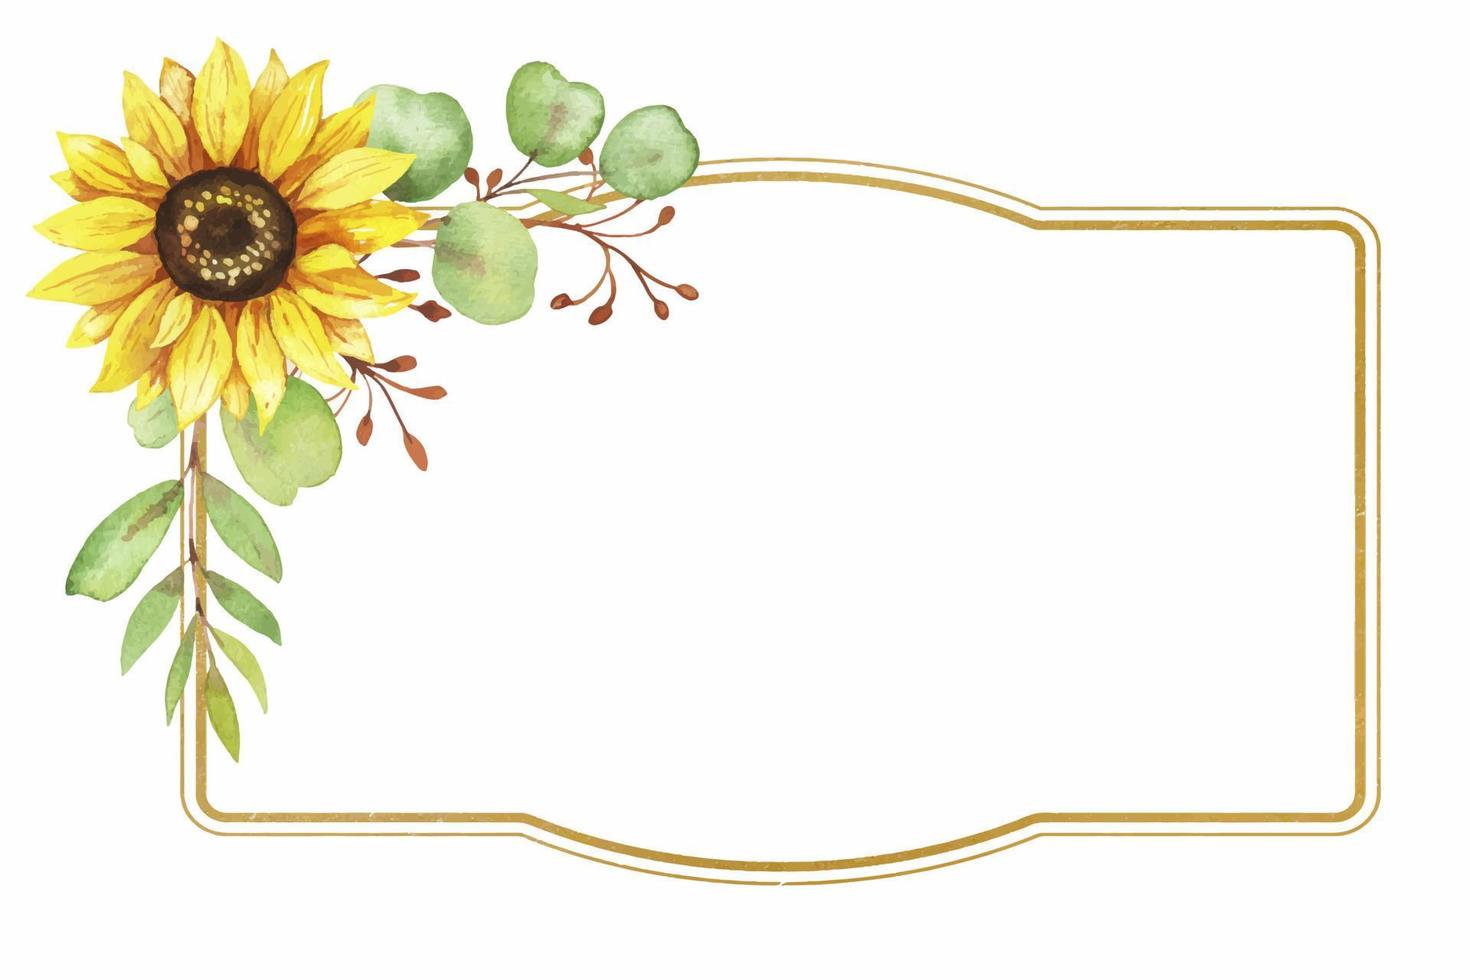 moldura dourada com flores de girassol, ilustração em aquarela vetor